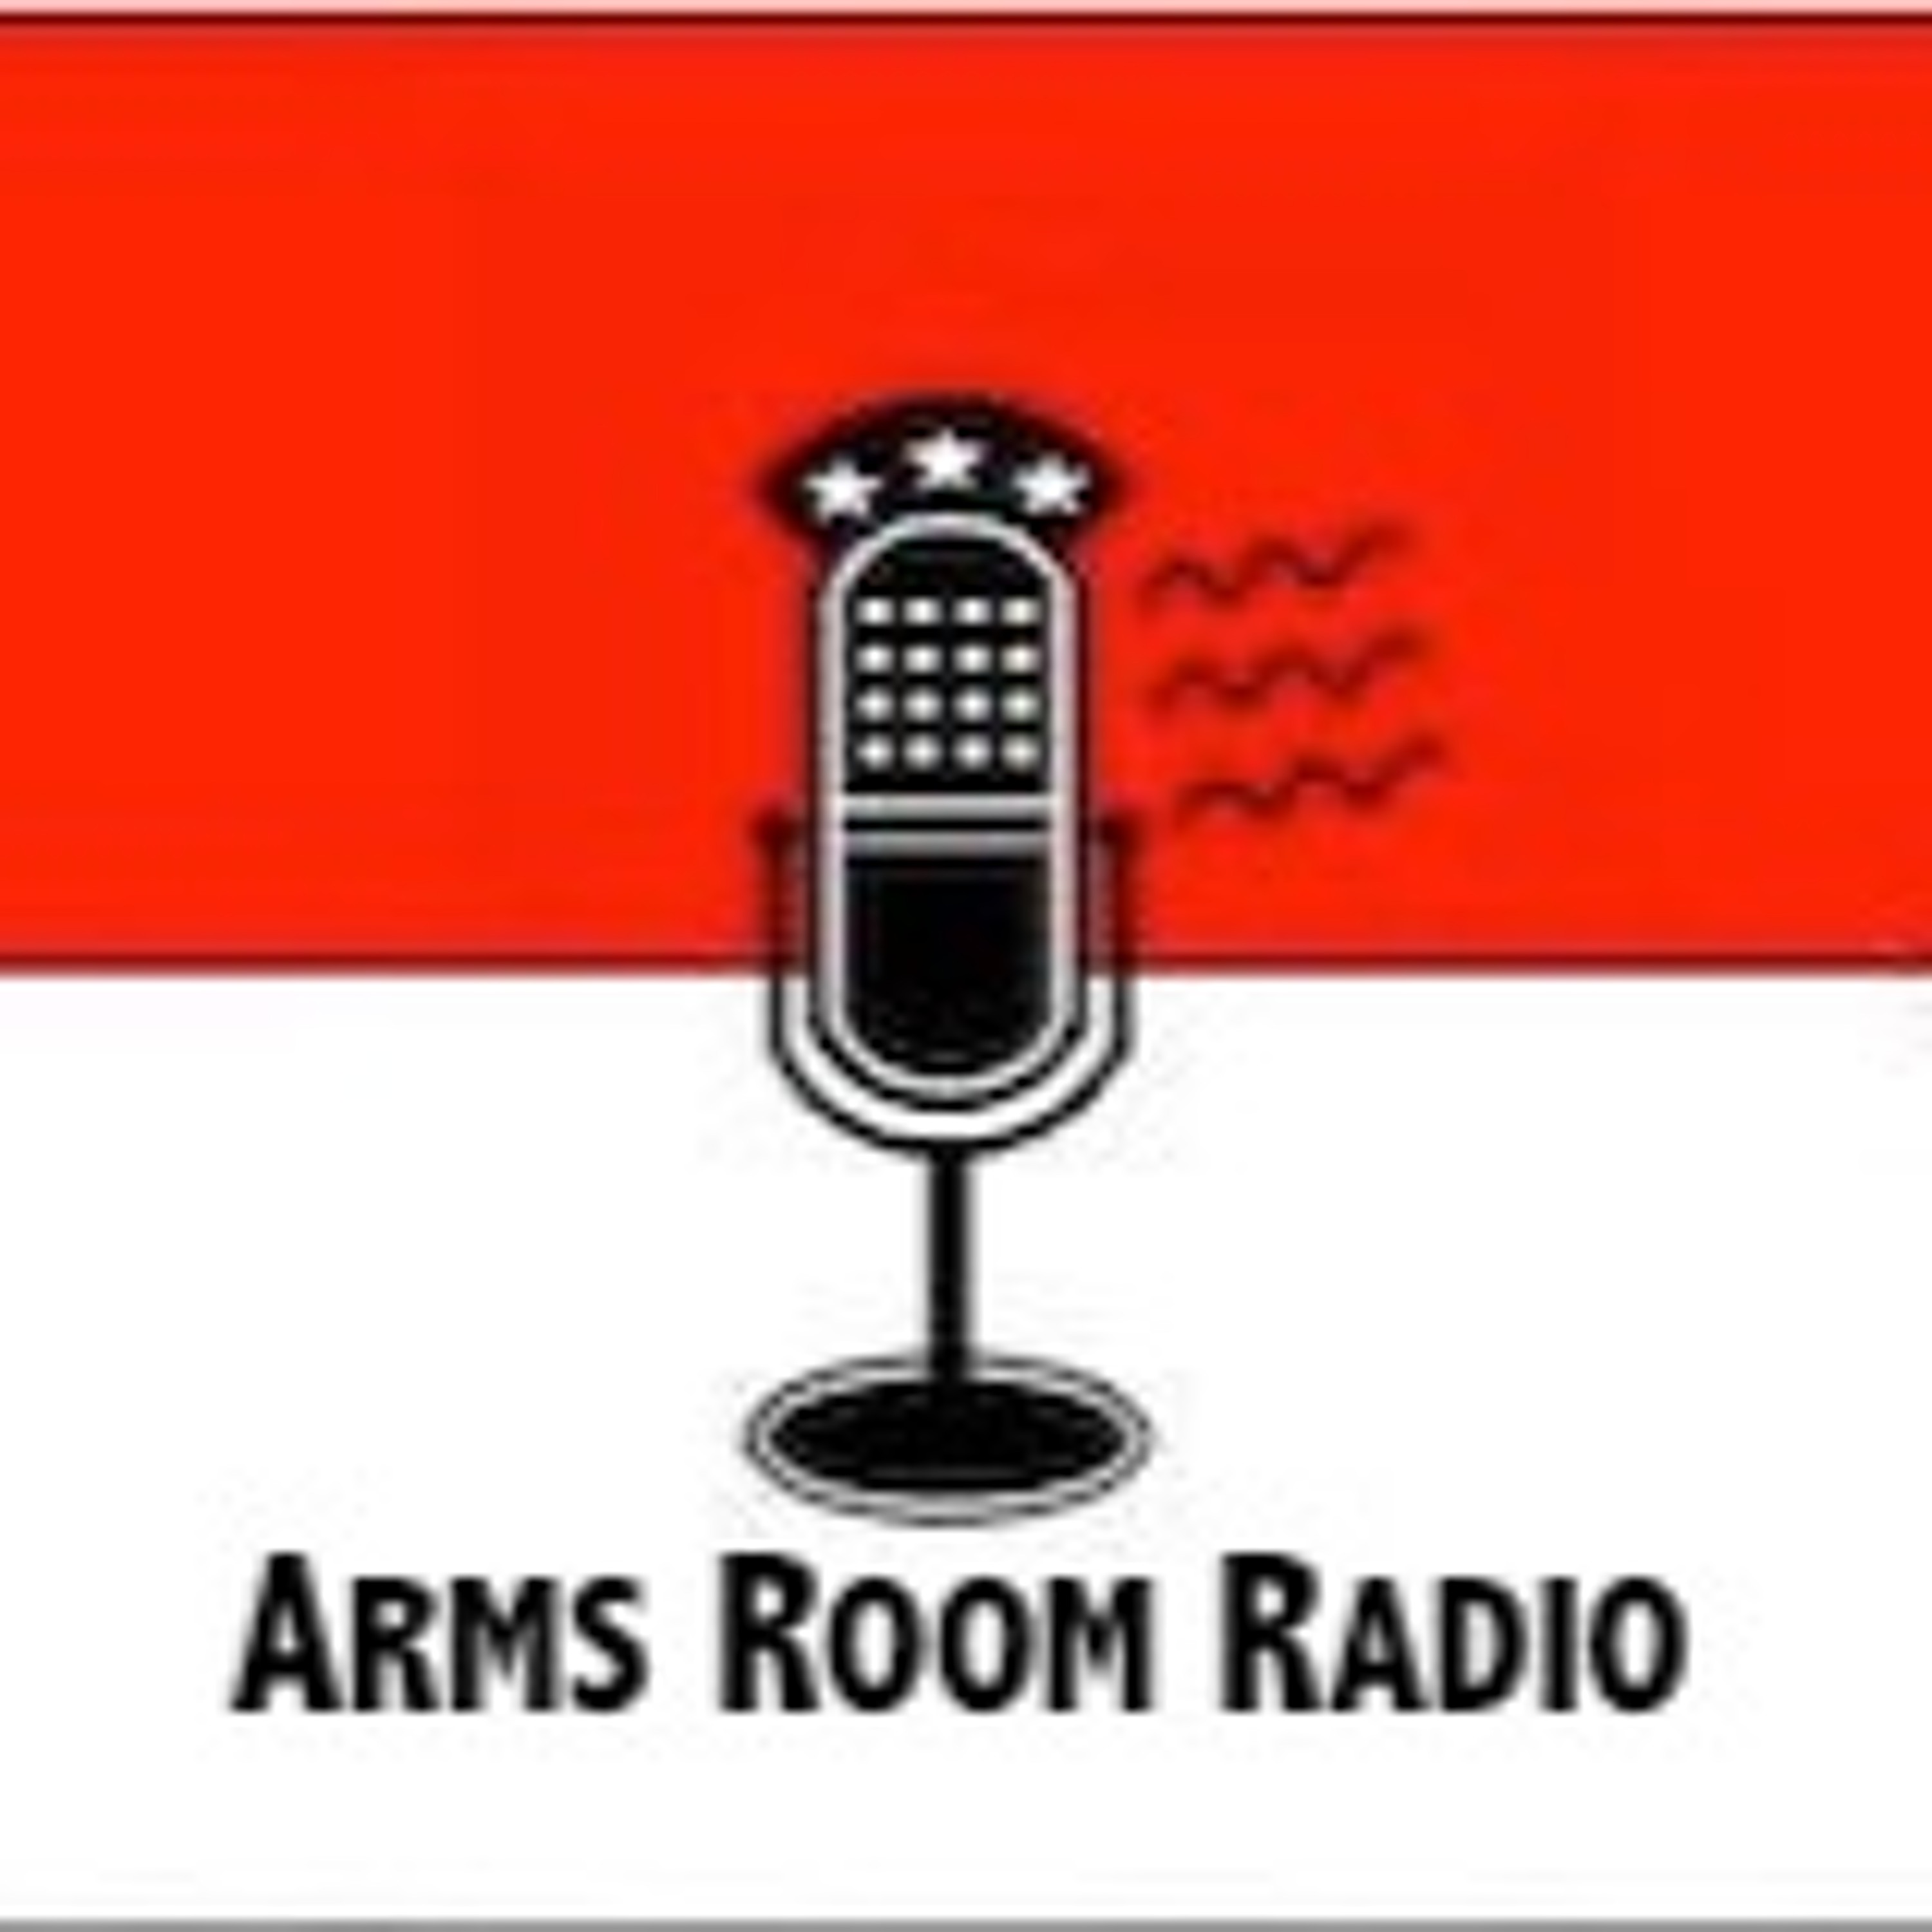 ArmsRoomRadio 05.30.20 SpaceX and Minnesota